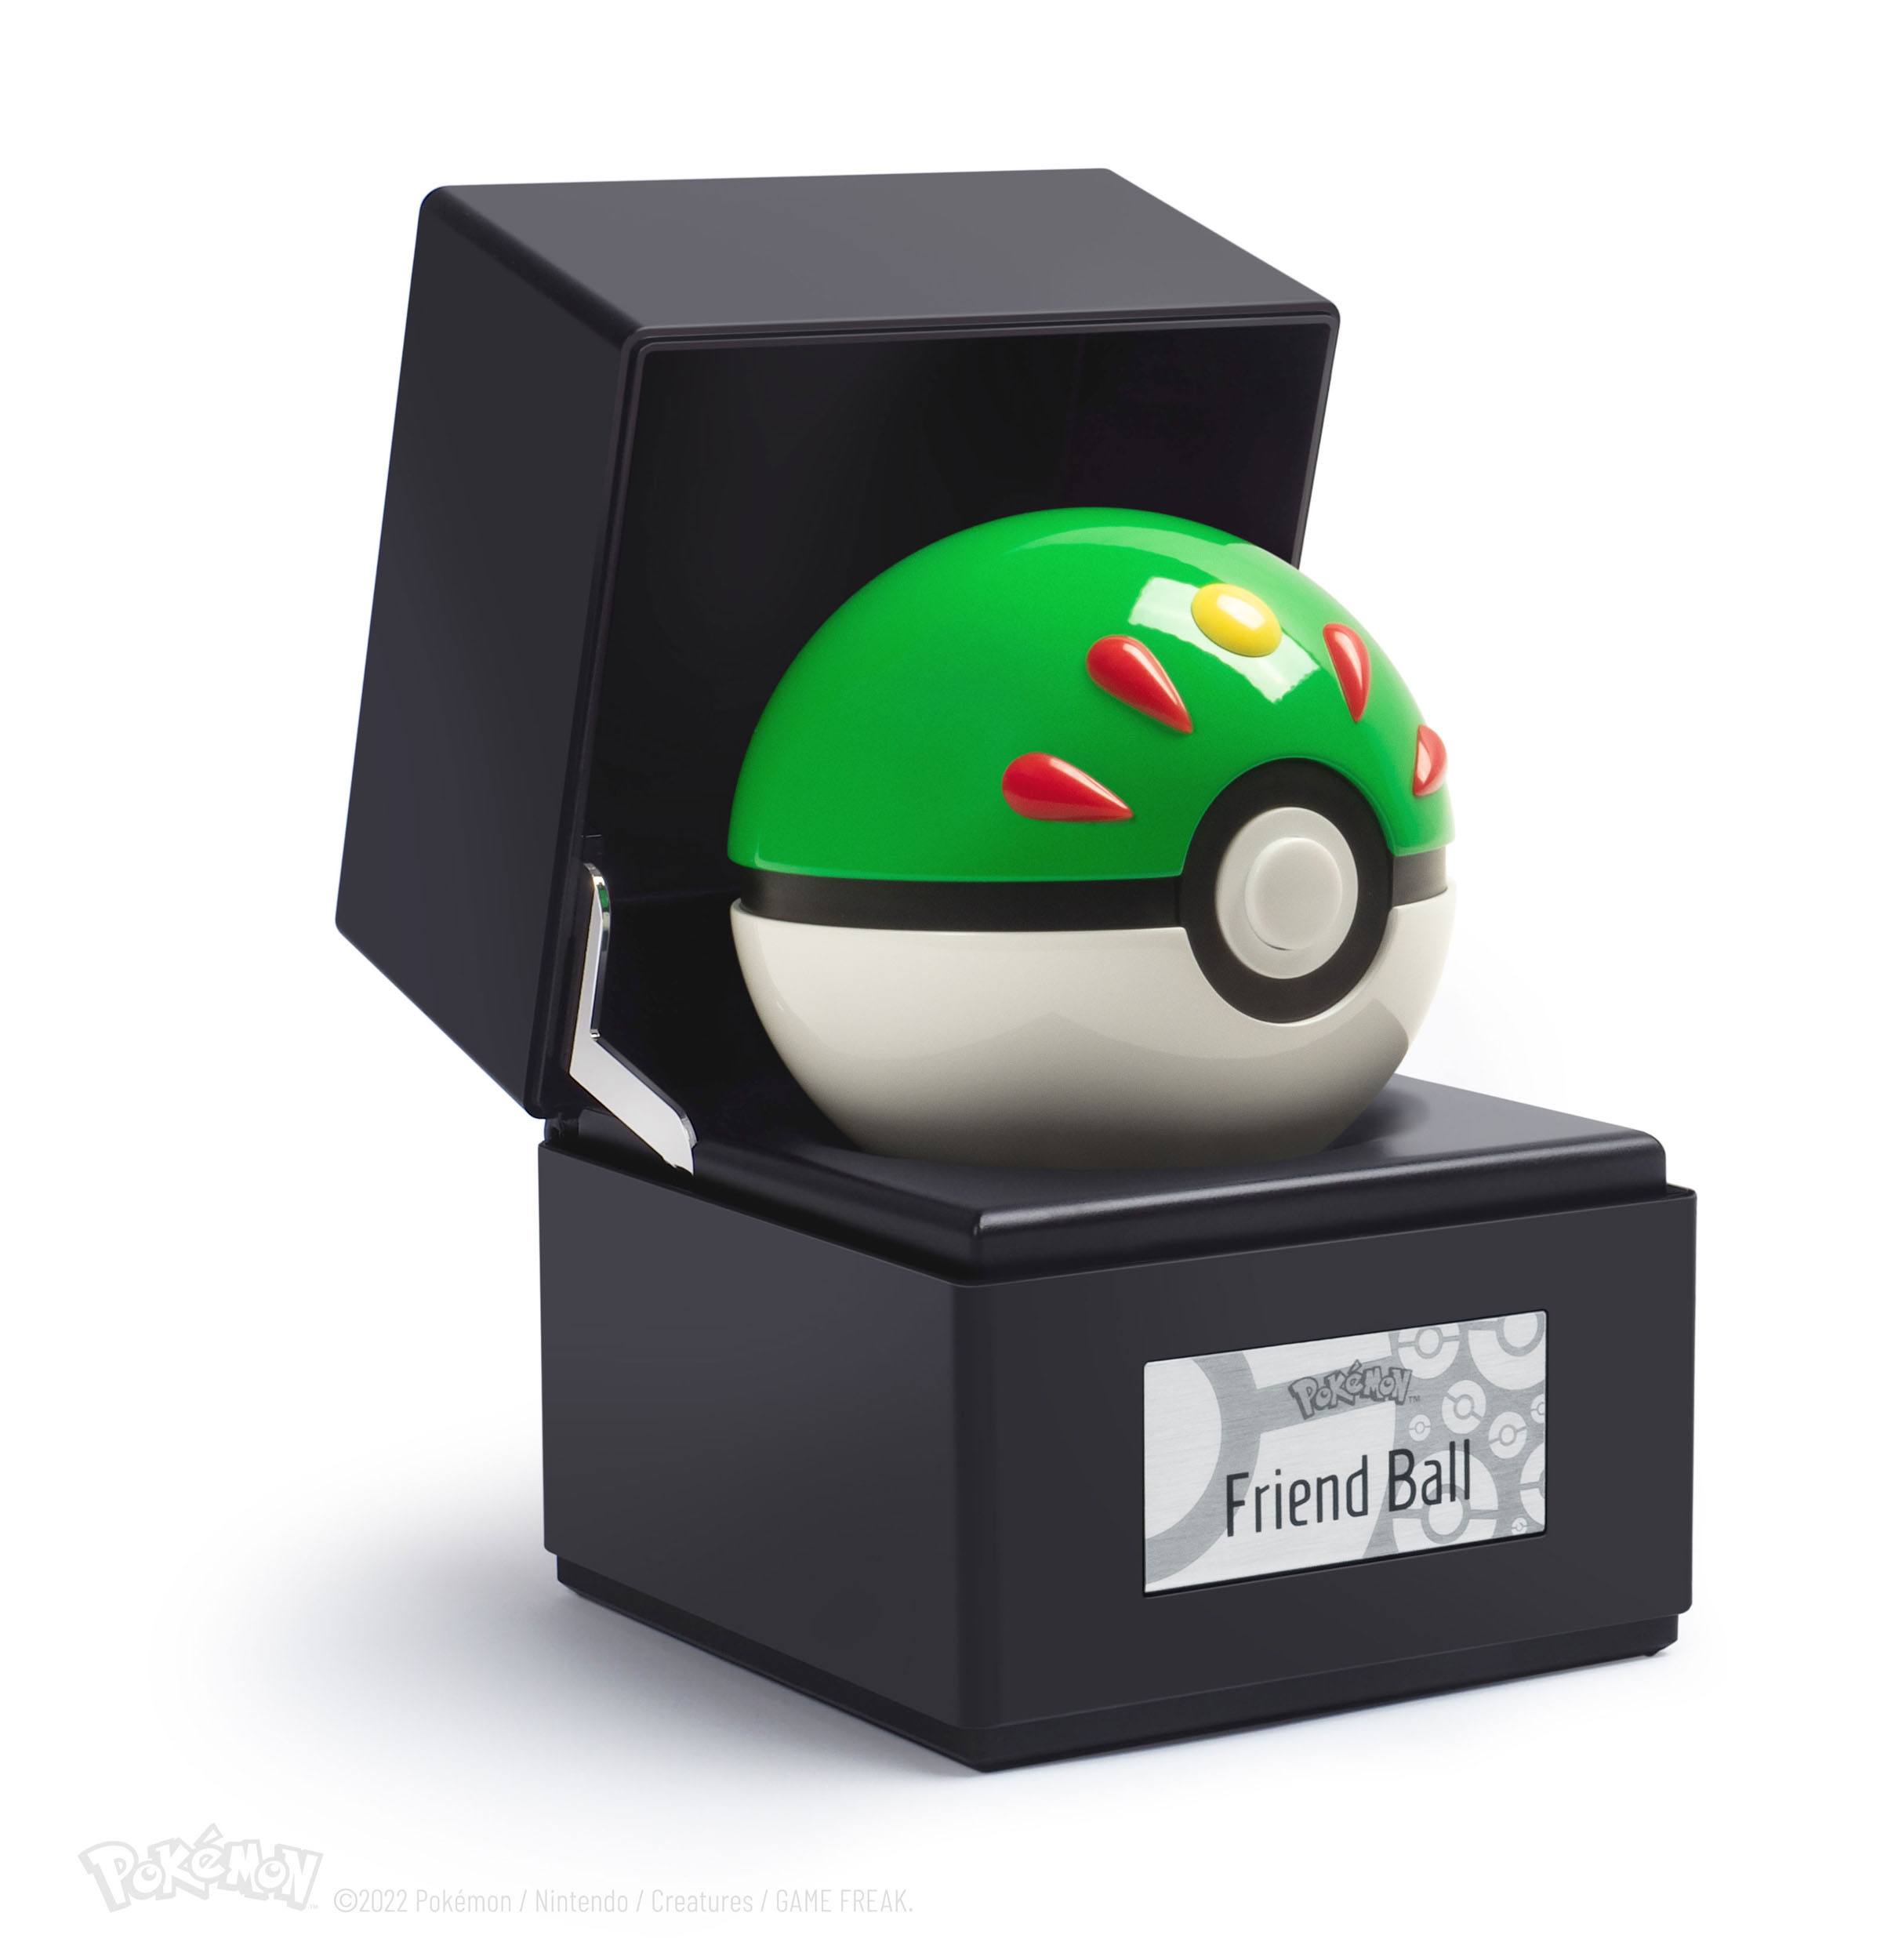 Pokémon - Friend Ball.